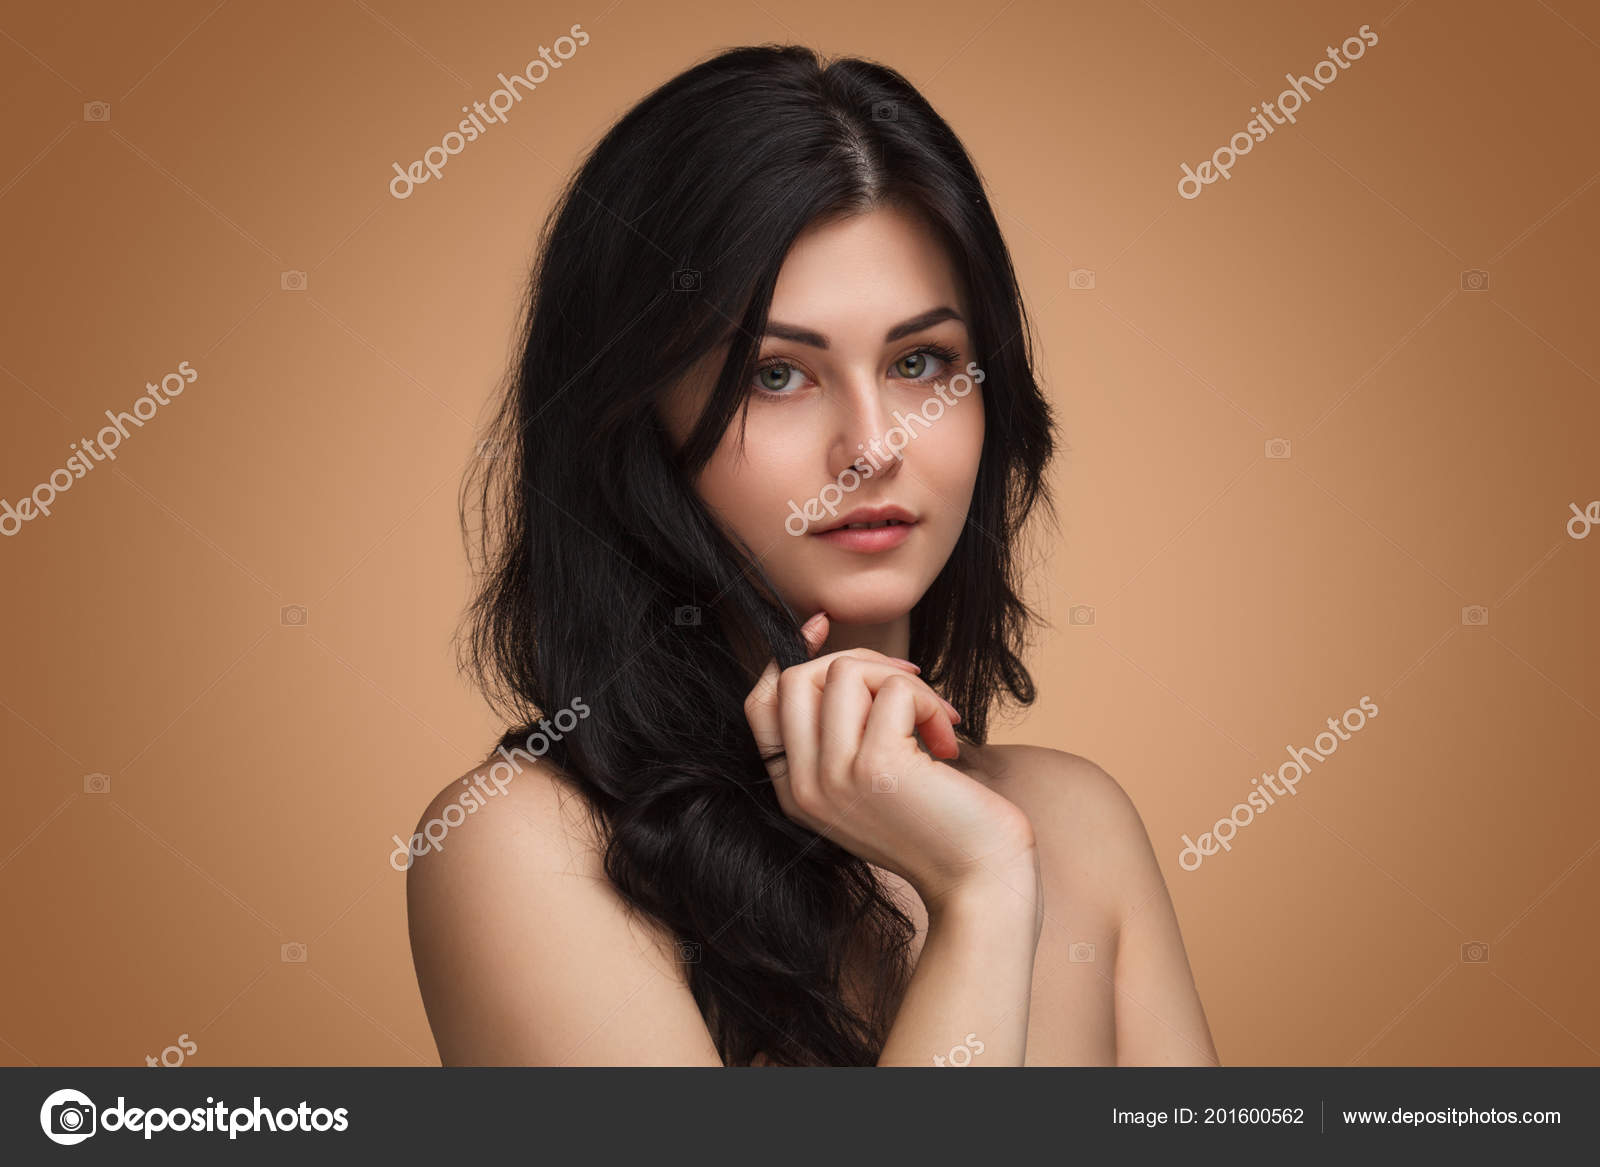 1600px x 1167px - Beautiful brunette woman in studio Stock Photo by Â©kegfire 201600562